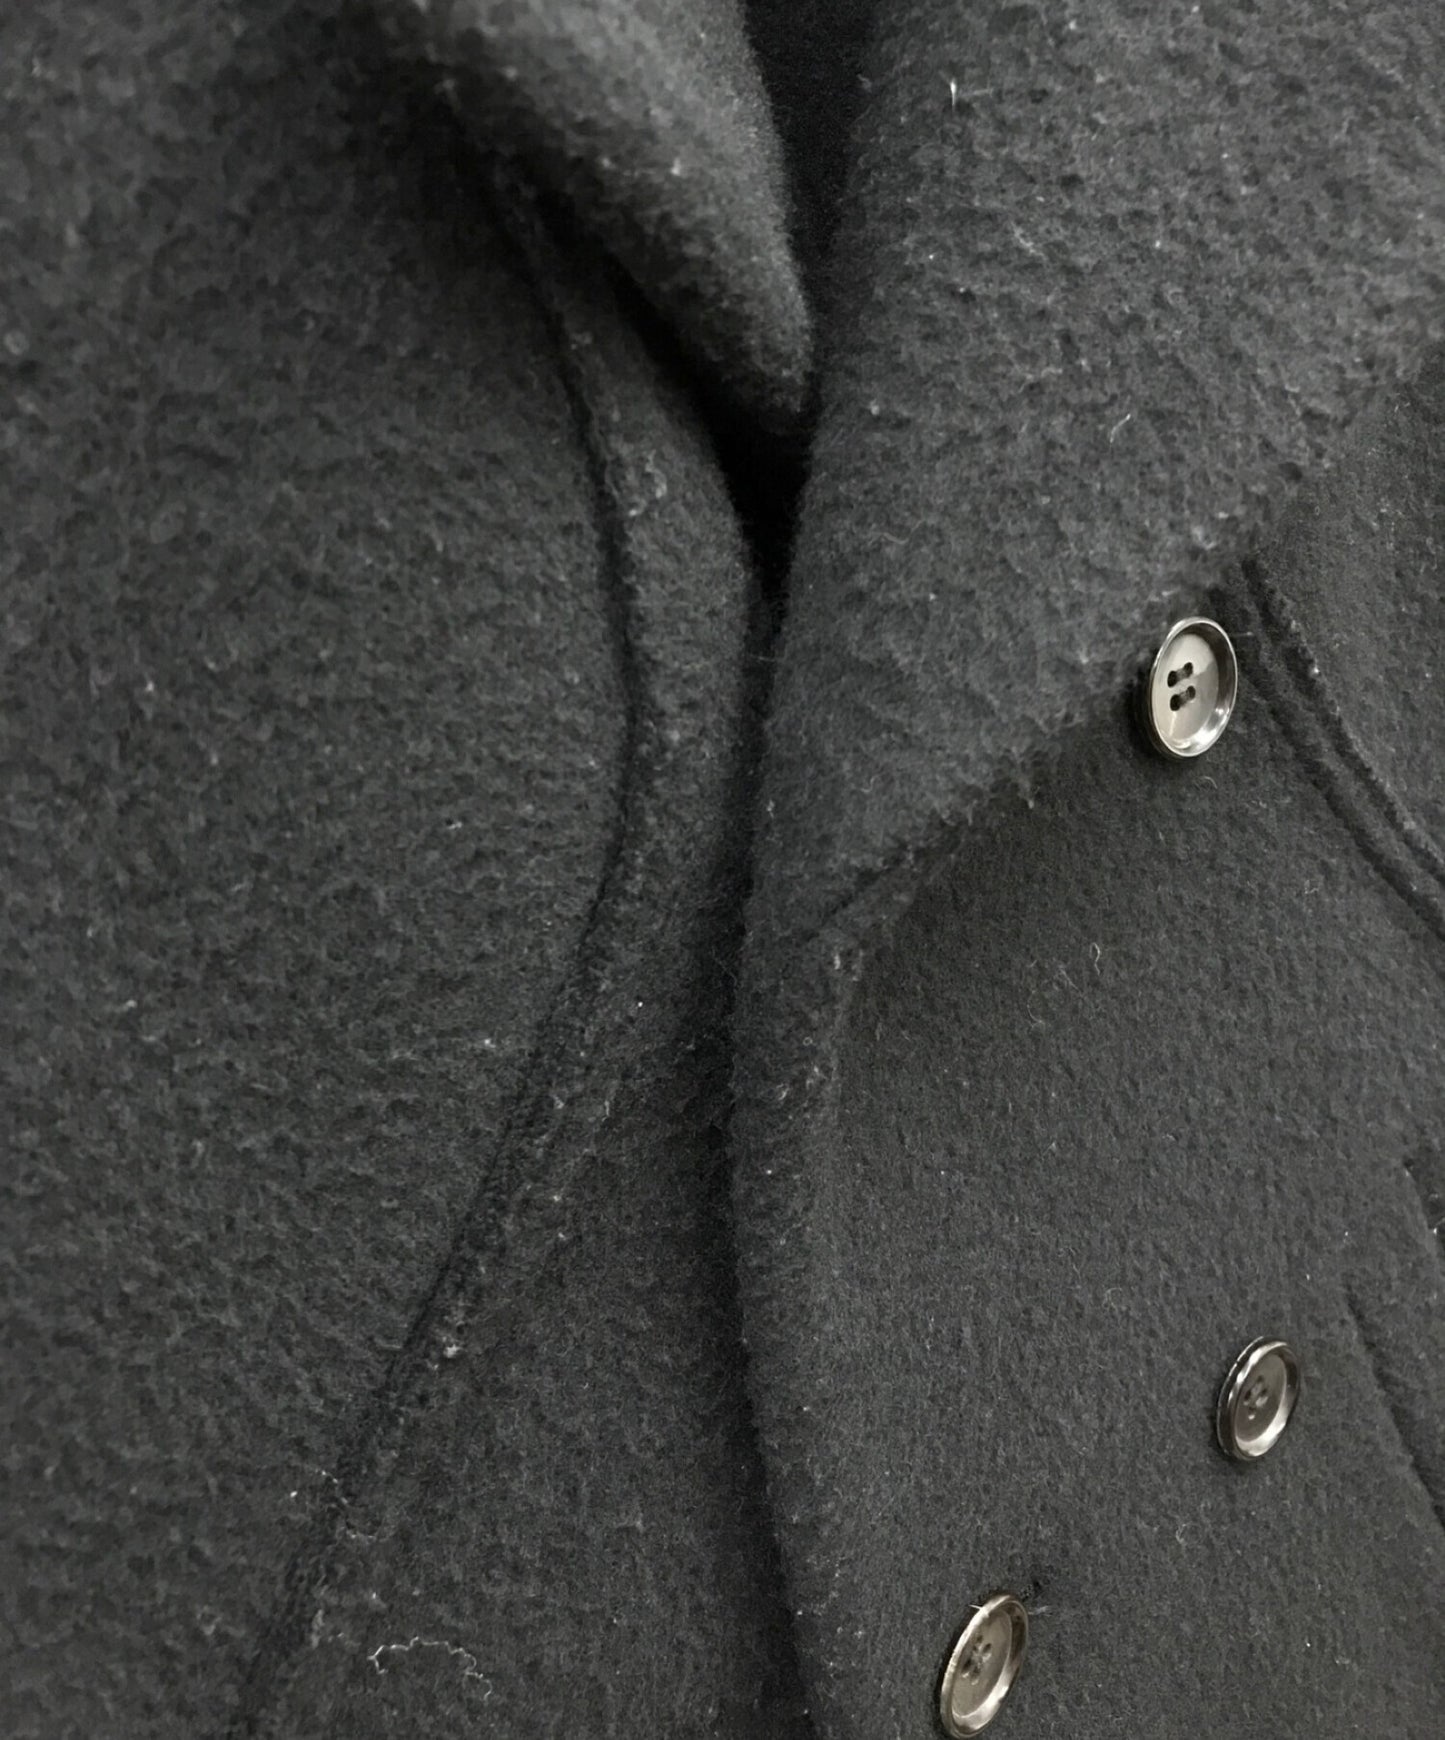 Comme des Garcons Homme Plus P Coat/Long Coat/Wool 코트 PK-C011